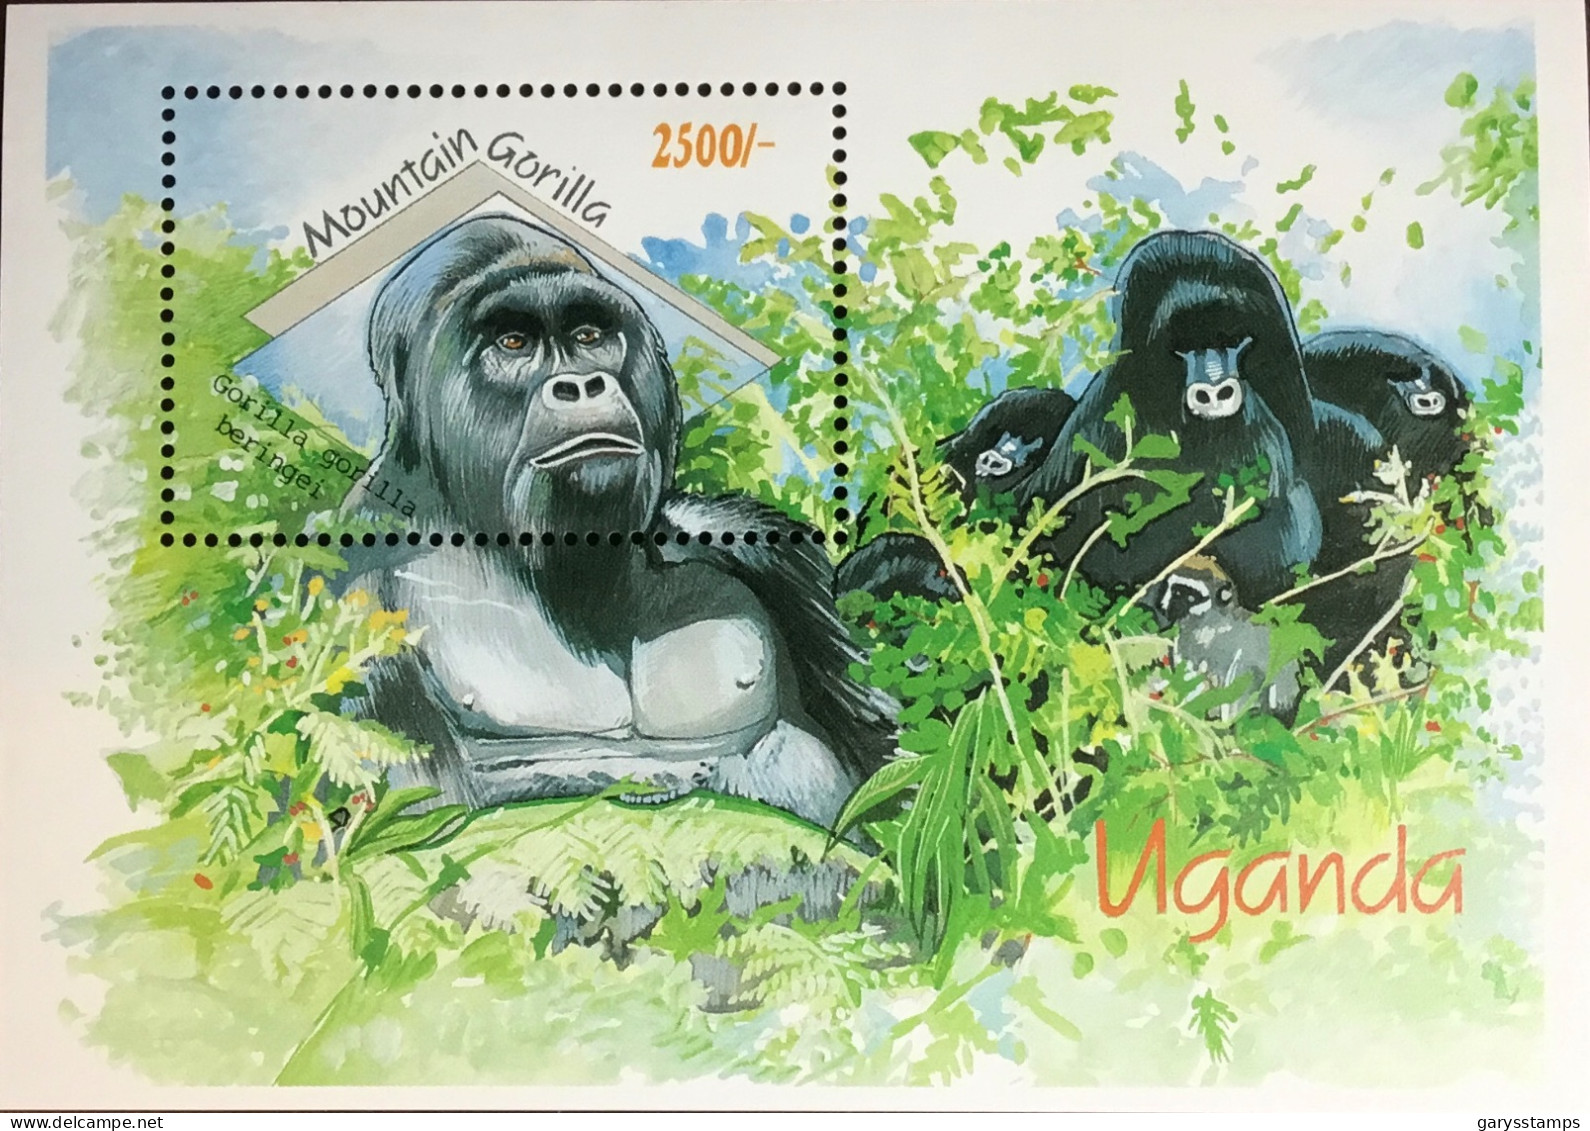 Uganda 1992 Wildlife Animals Gorilla Minisheet MNH - Gorillas